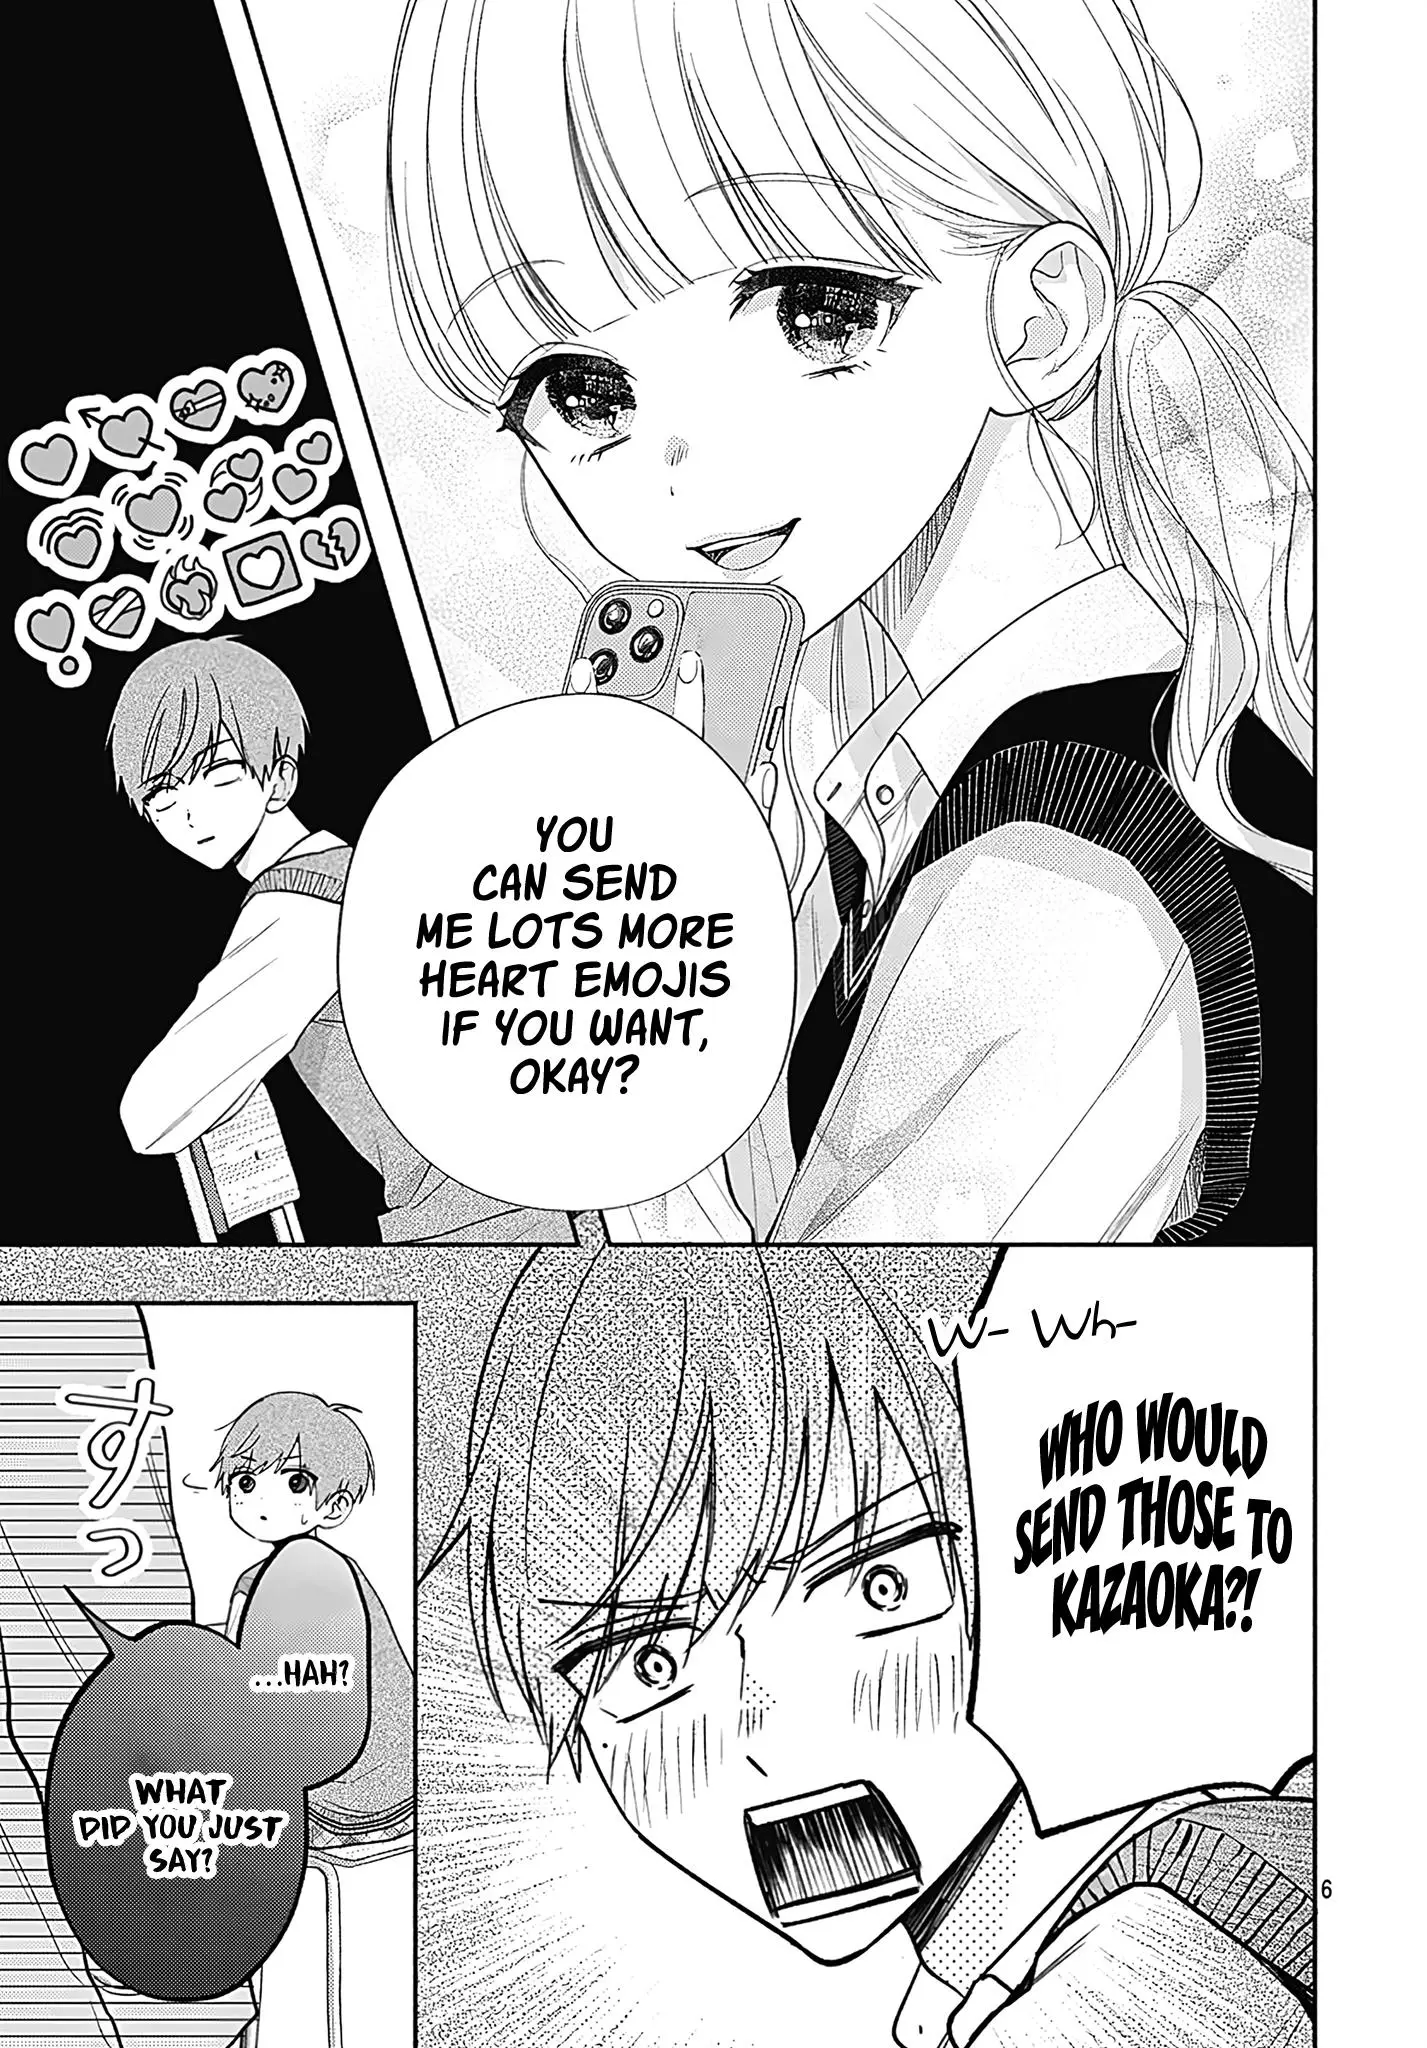 I Hate Komiyama - 3 page 6-572a05a6